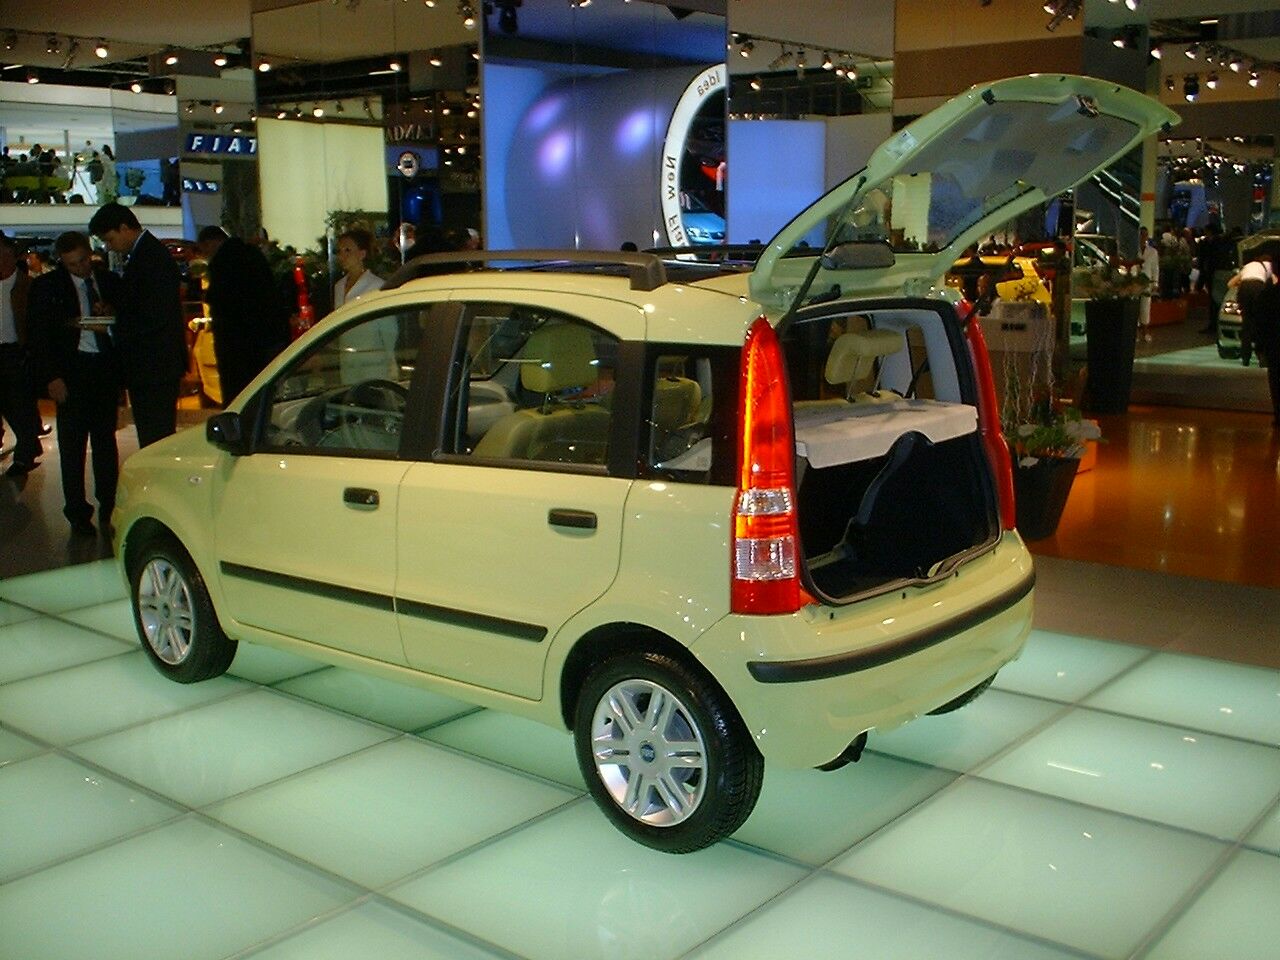 Fiat Panda at the 2003 Frankfurt IAA